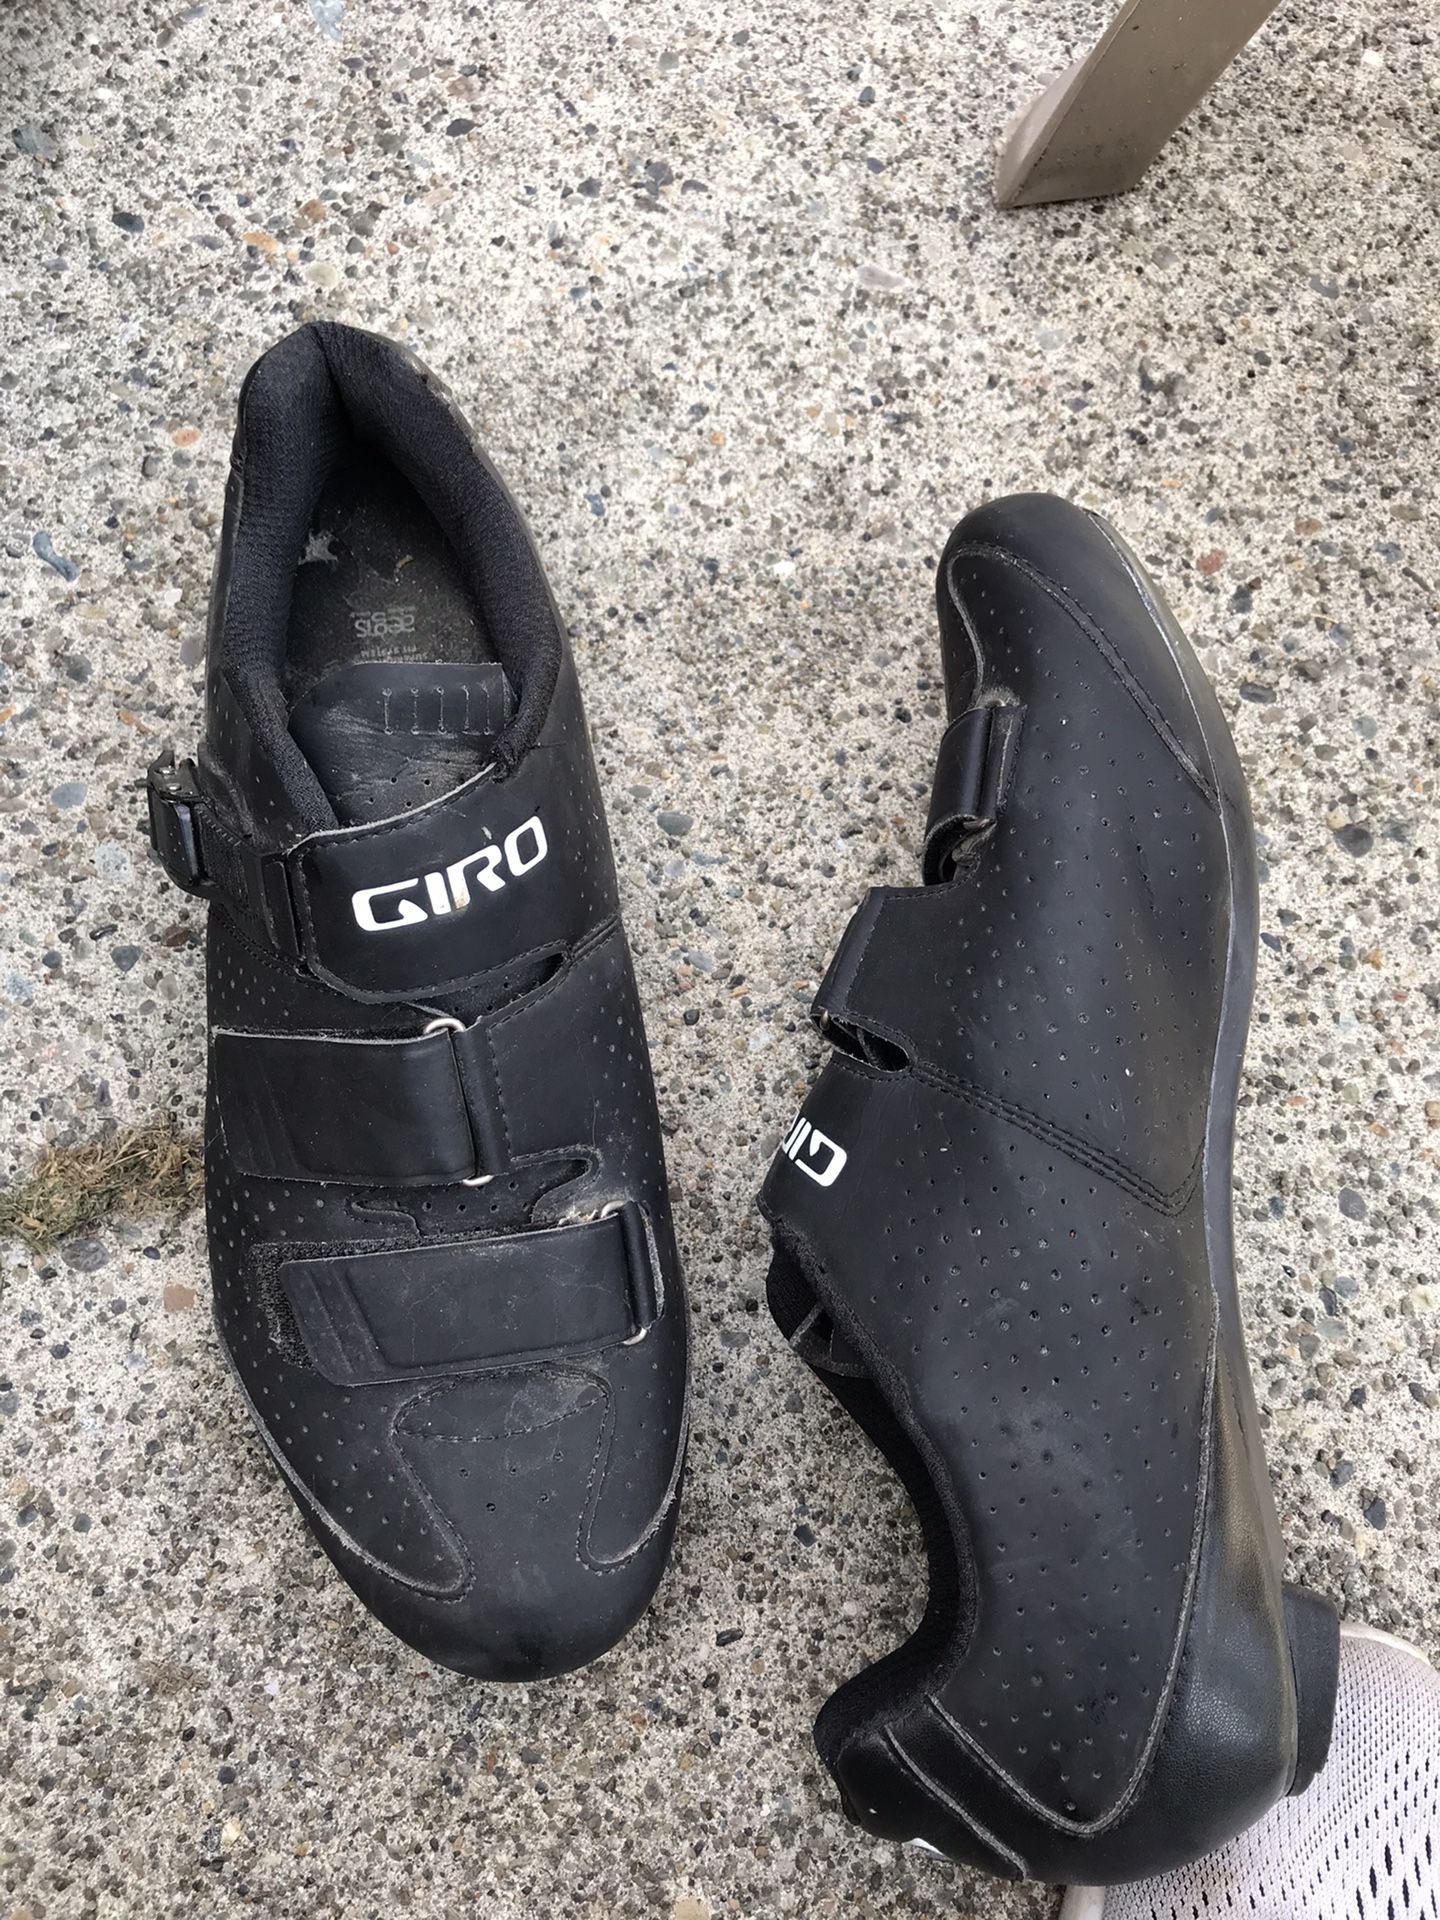 Giro cycling shoes